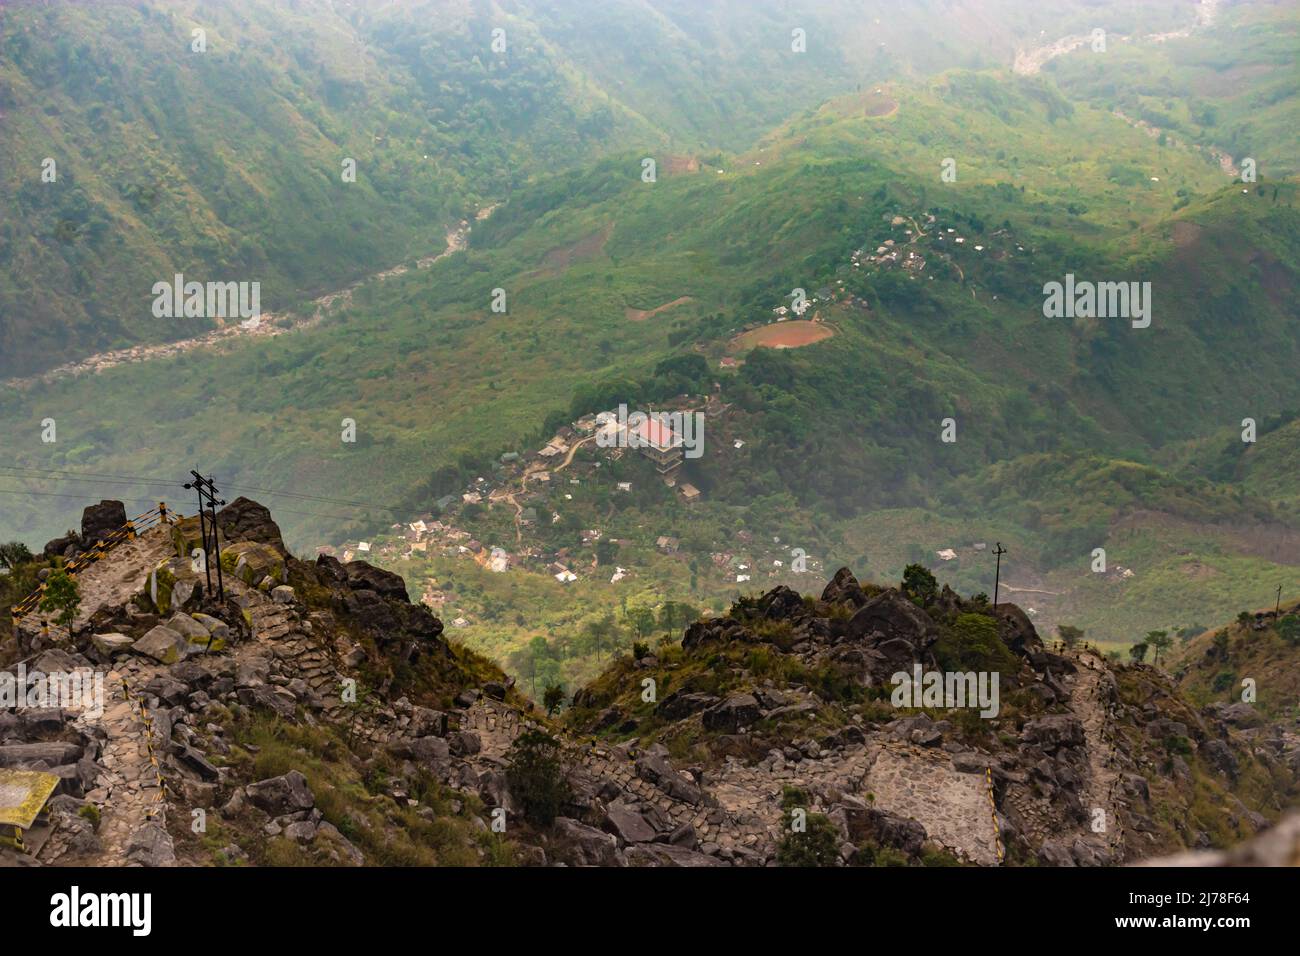 piccolo villaggio remoto immerso nella valle di montagna da angolo superiore Foto Stock